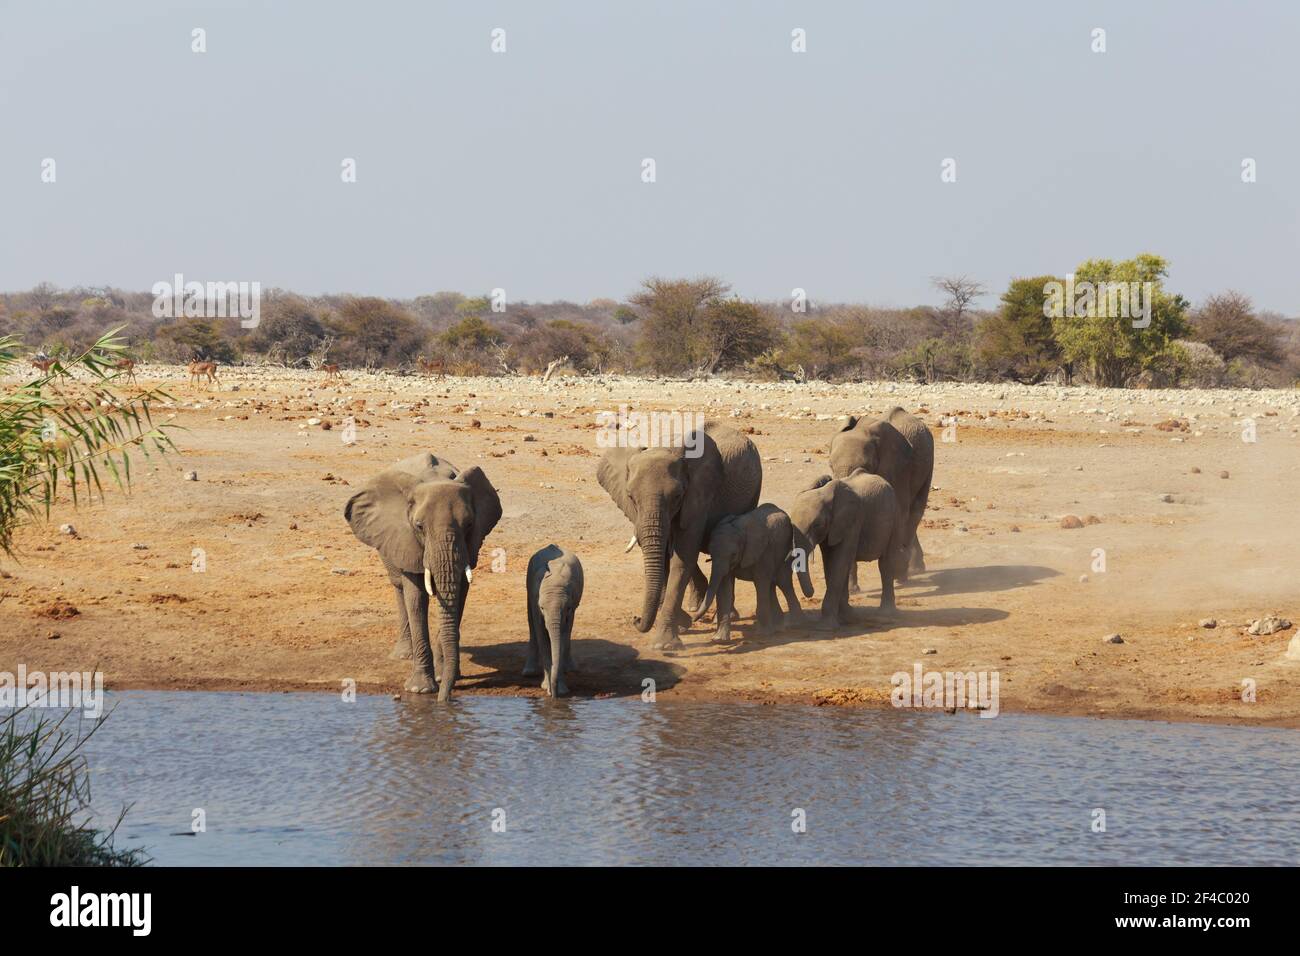 Elephant herd approaching a waterhole, Etosha National Park, Namibia, Africa Stock Photo